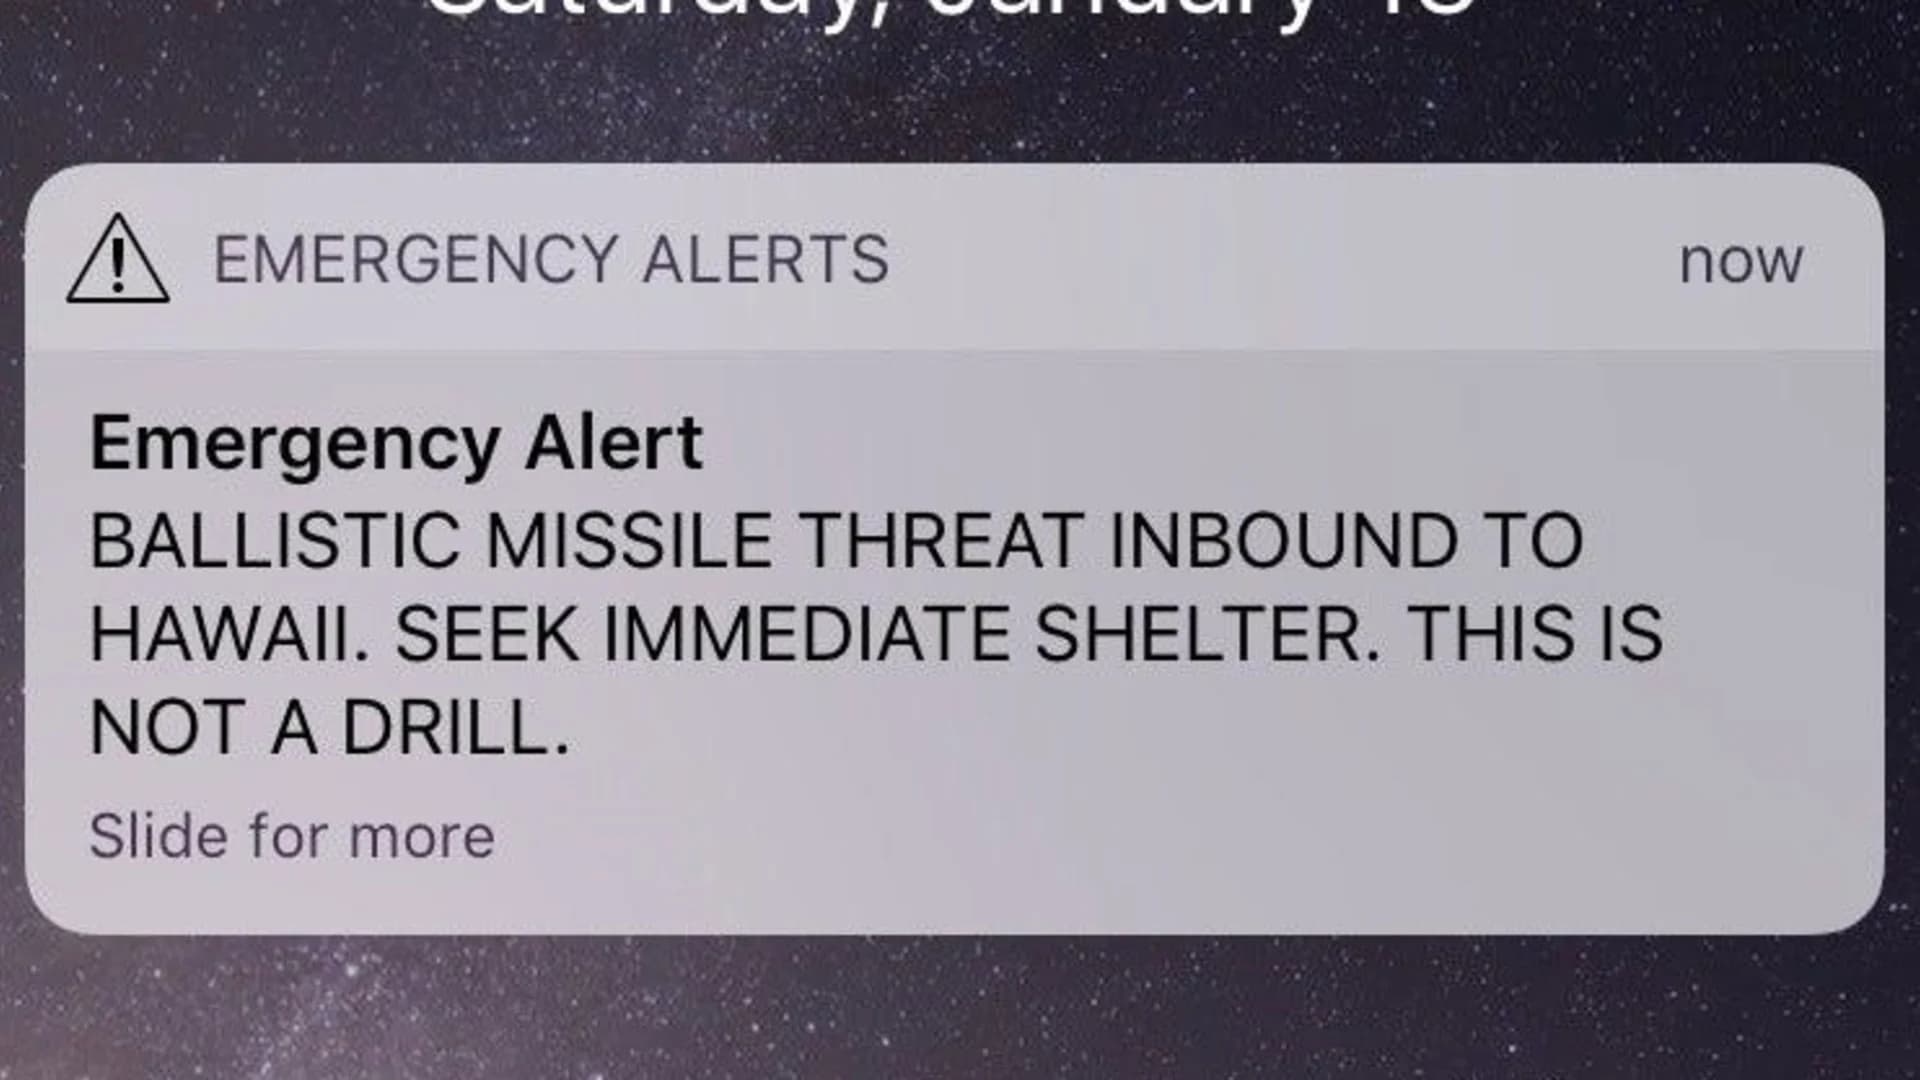 'We made a mistake' Hawaii sends false missile alert